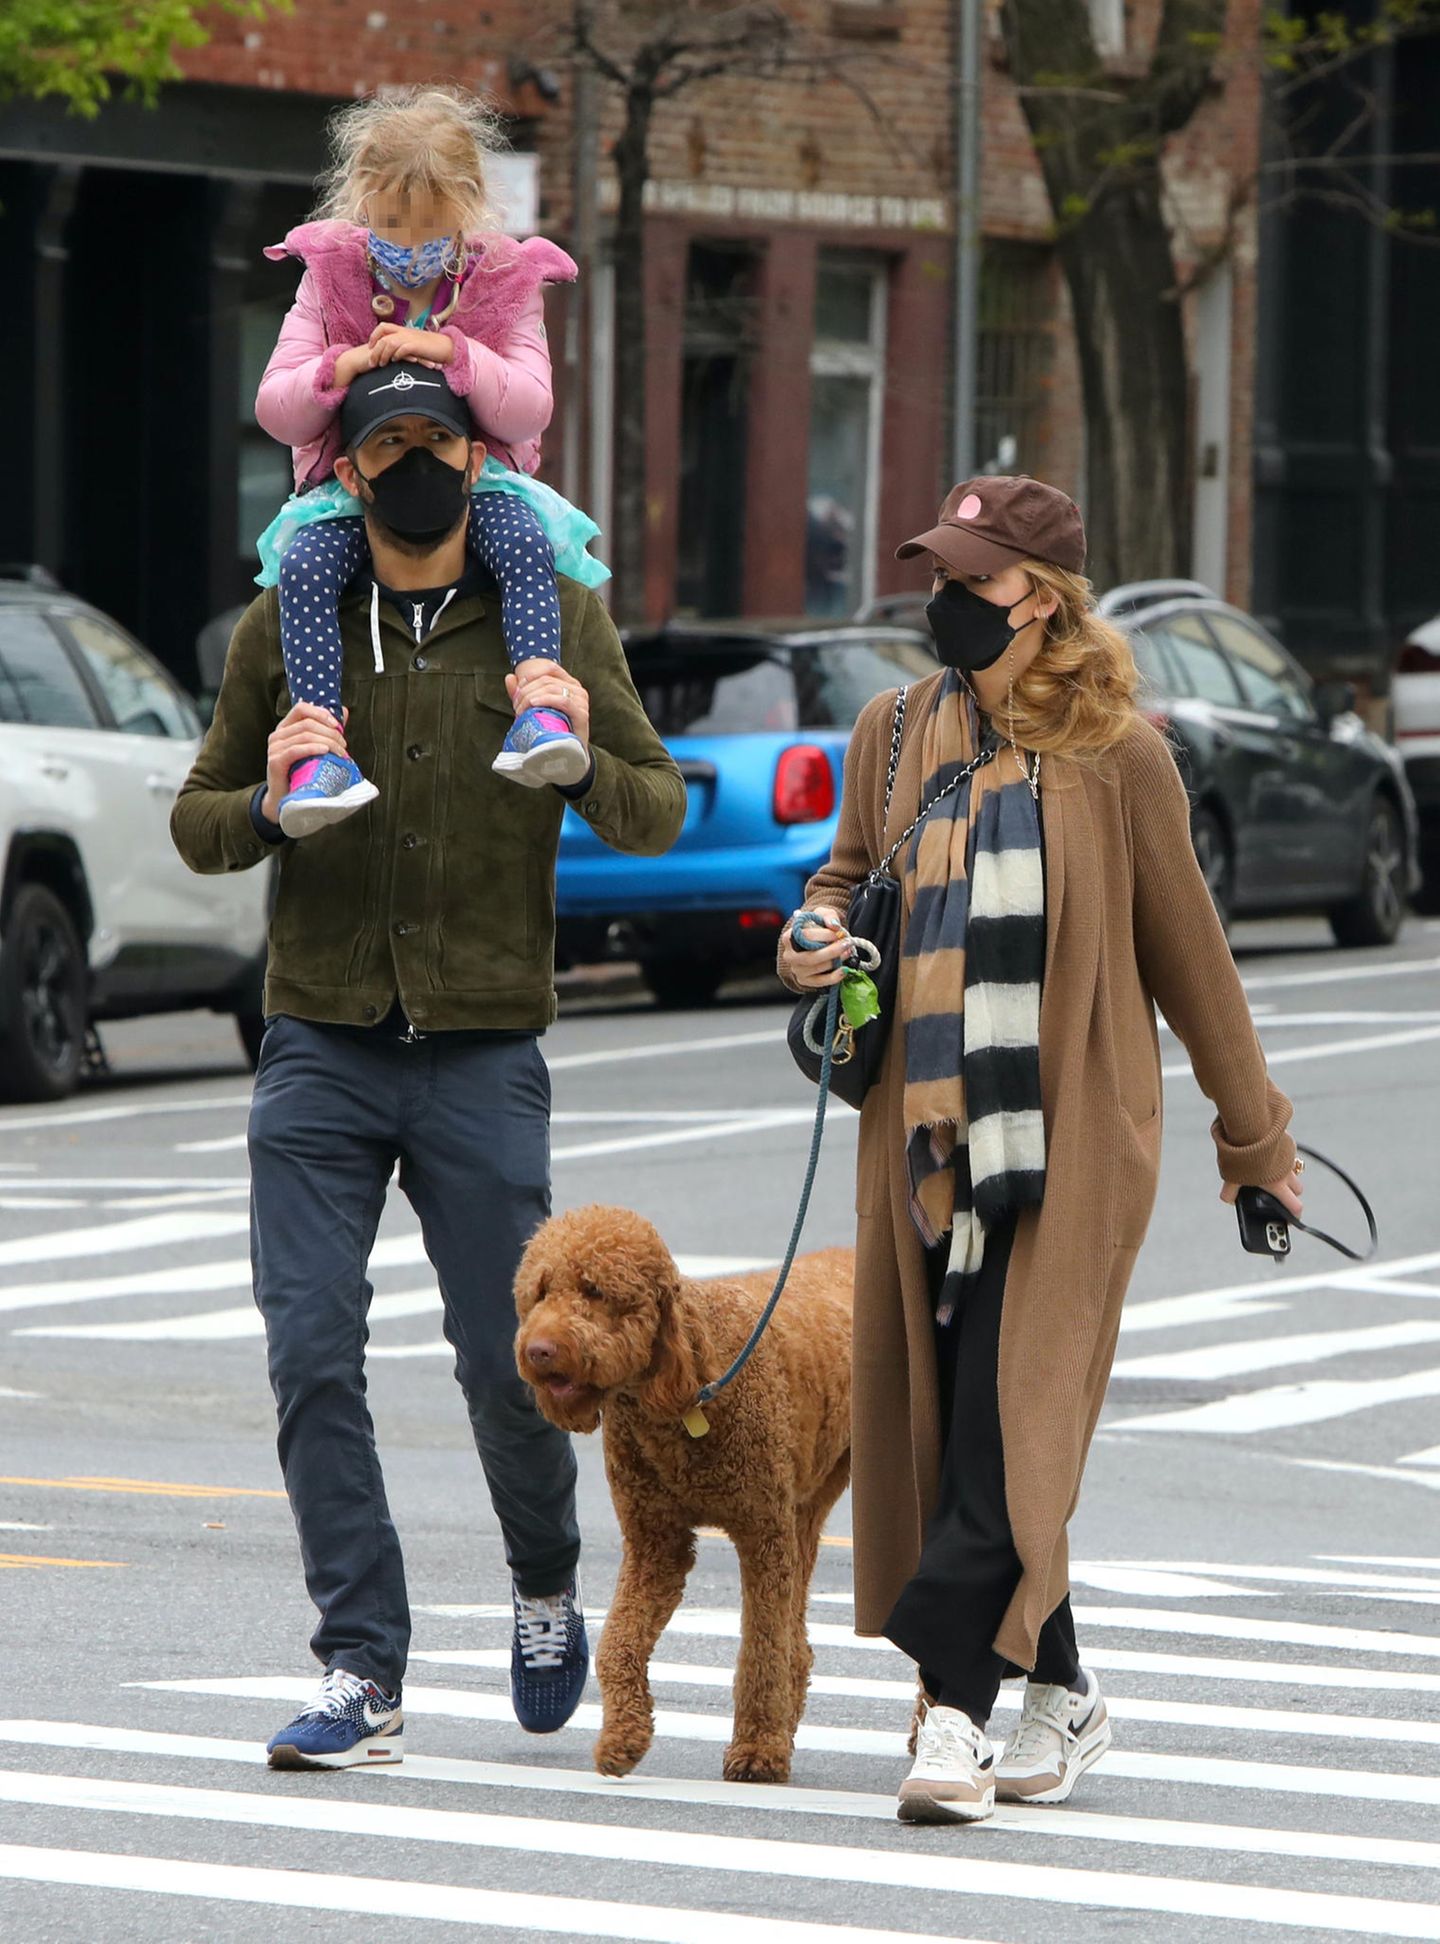 Schauspieler Ryan Reynolds und Ehefrau Blake Lively bringen ihre Tochter gerne selbst zur Schule. Papa Ryan übernimmt diese Aufgabe mit vollem Körpereinsatz und trägt seine Liebste auf seinen starken Schultern. An diesem Morgen ist die fünfköpfige Familienbande zwar nicht komplett, dafür begleitet sie ihr süßer Hund durch die Straßen New Yorks.